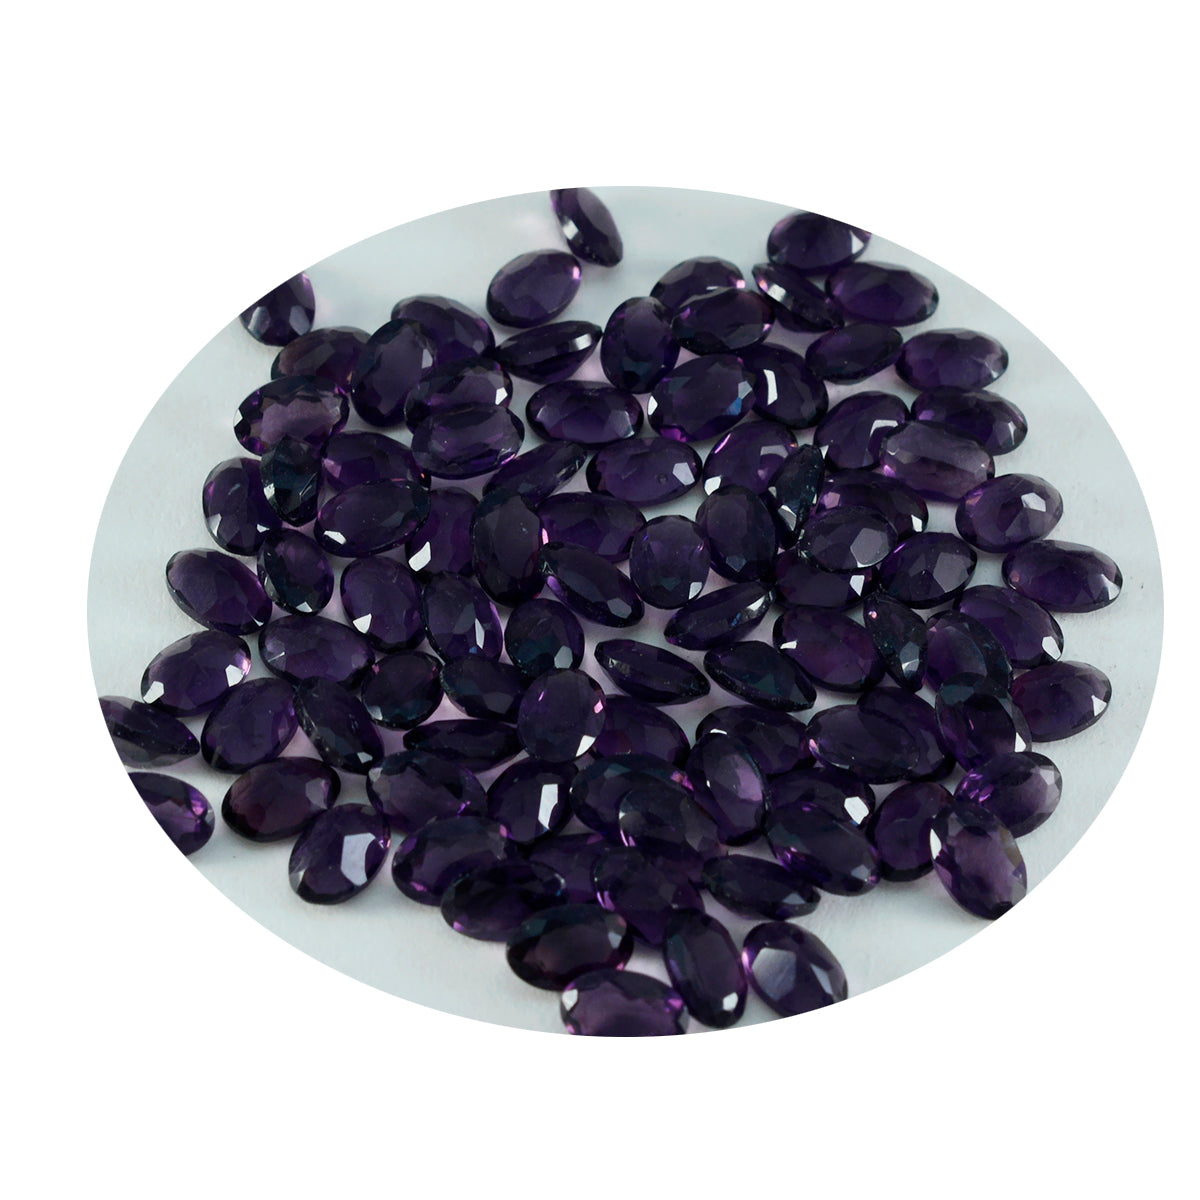 riyogems 1шт фиолетовый аметист cz ограненный 5x7 мм драгоценный камень овальной формы отличное качество